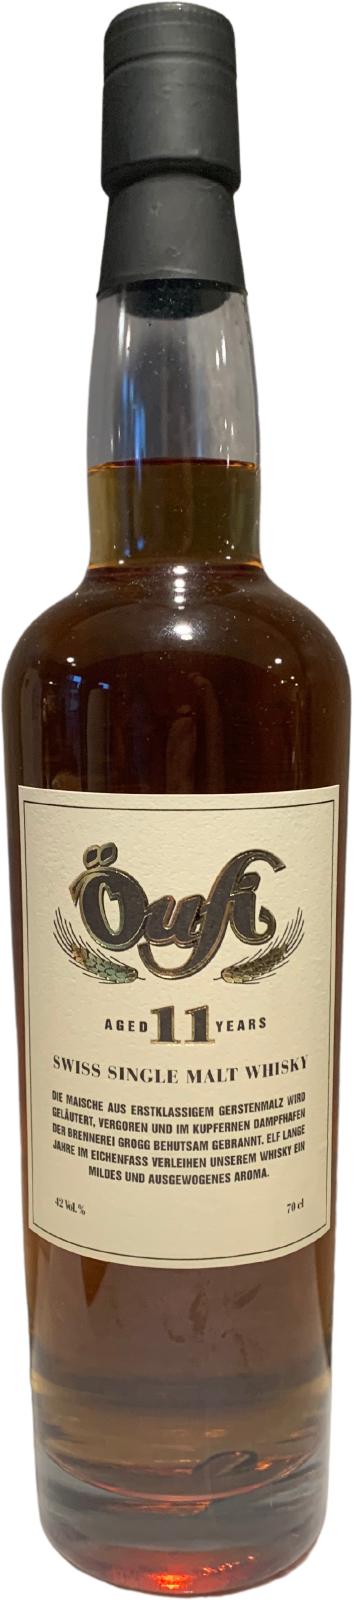 Öufi-Brauerei 2010